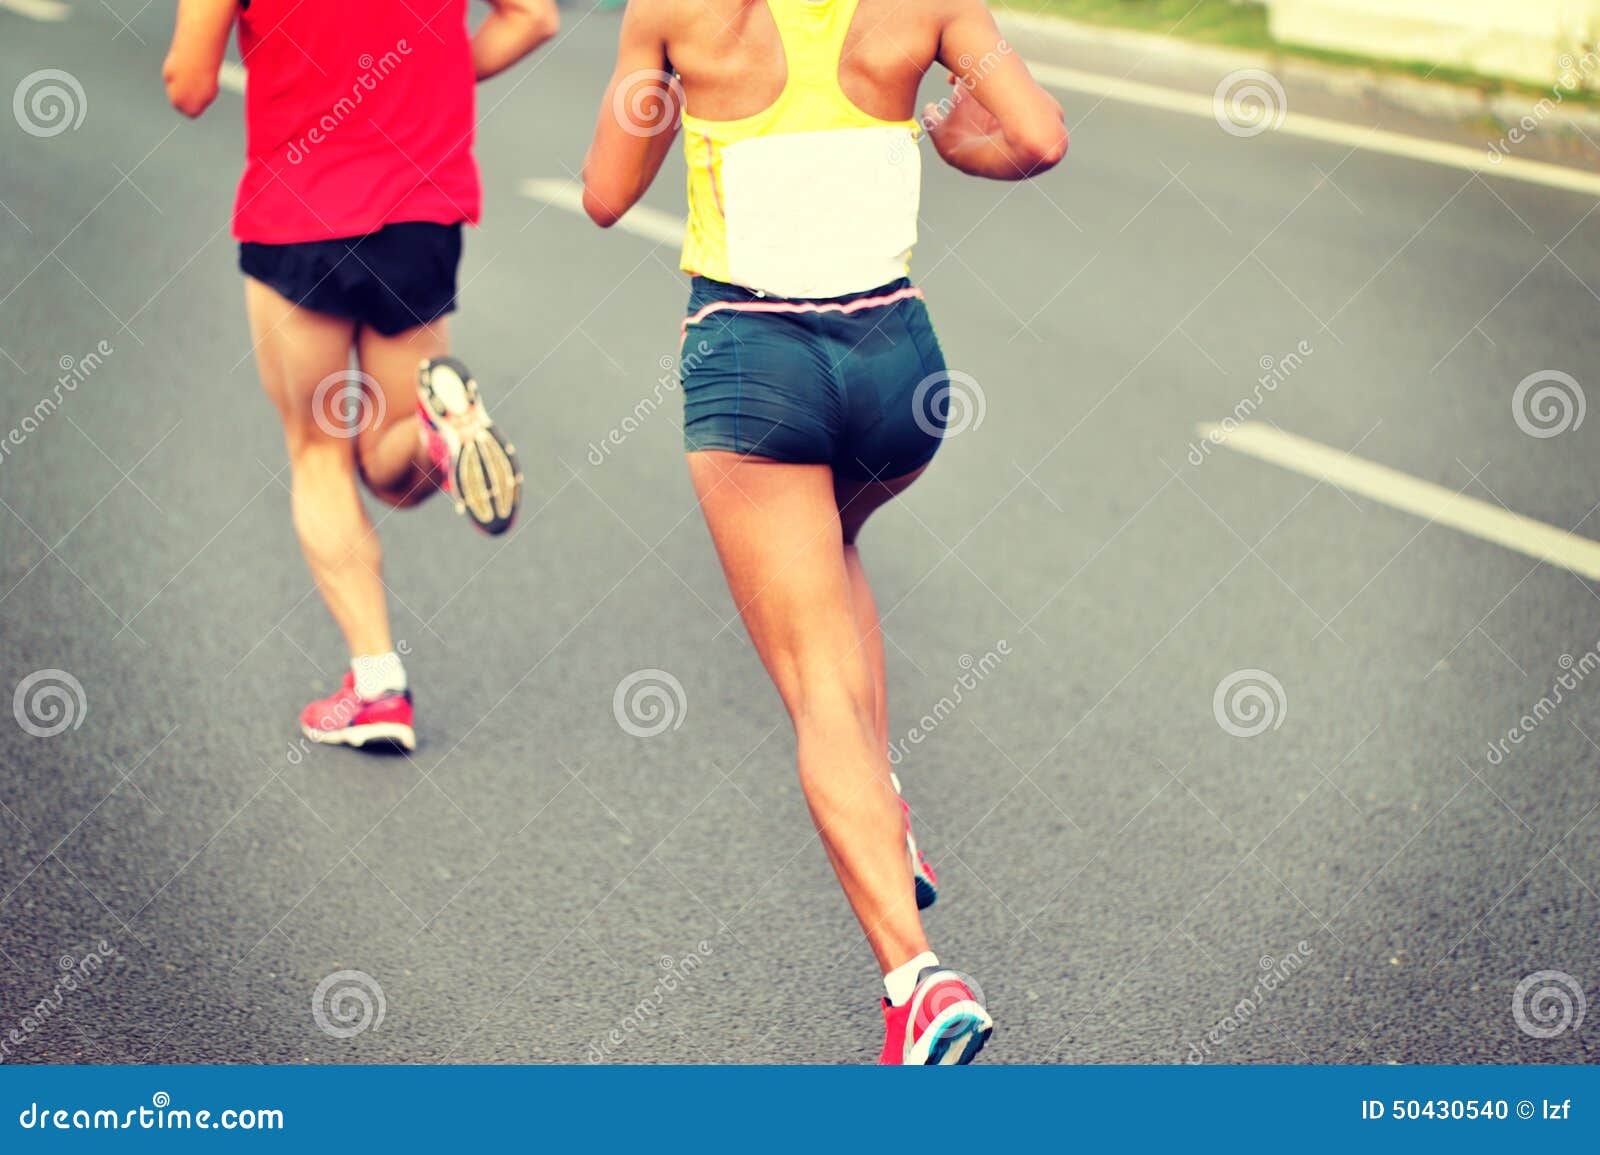 Marathon athletes run stock photo. Image of back, fitness - 50430540